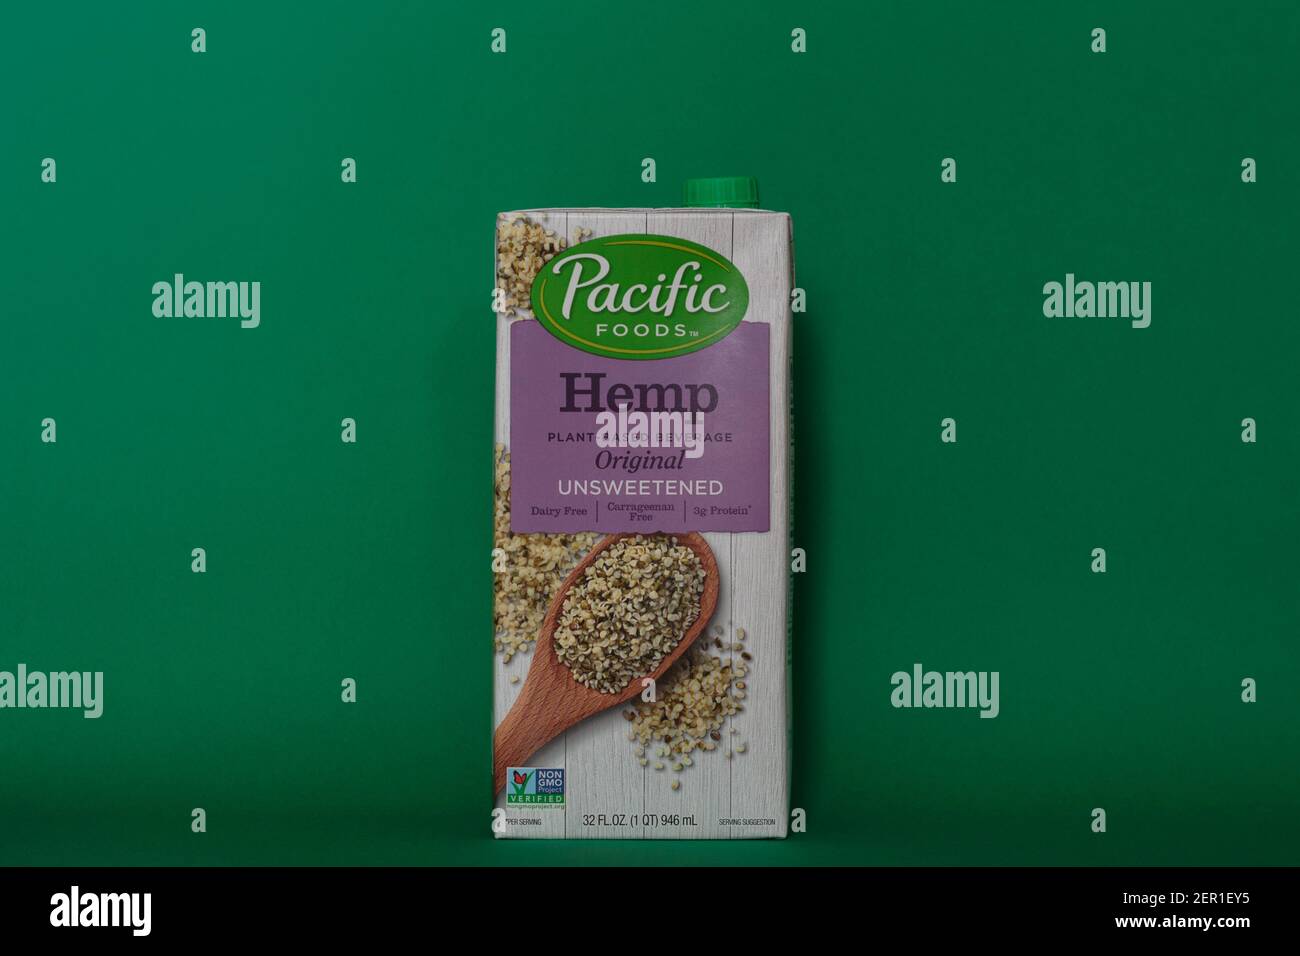 Éditorial illustratif de la marque Pacific Foods lait de chanvre à base de boisson végétale, originale non sucrée, végétalien, sans lait, non OGM lait de substitution Banque D'Images